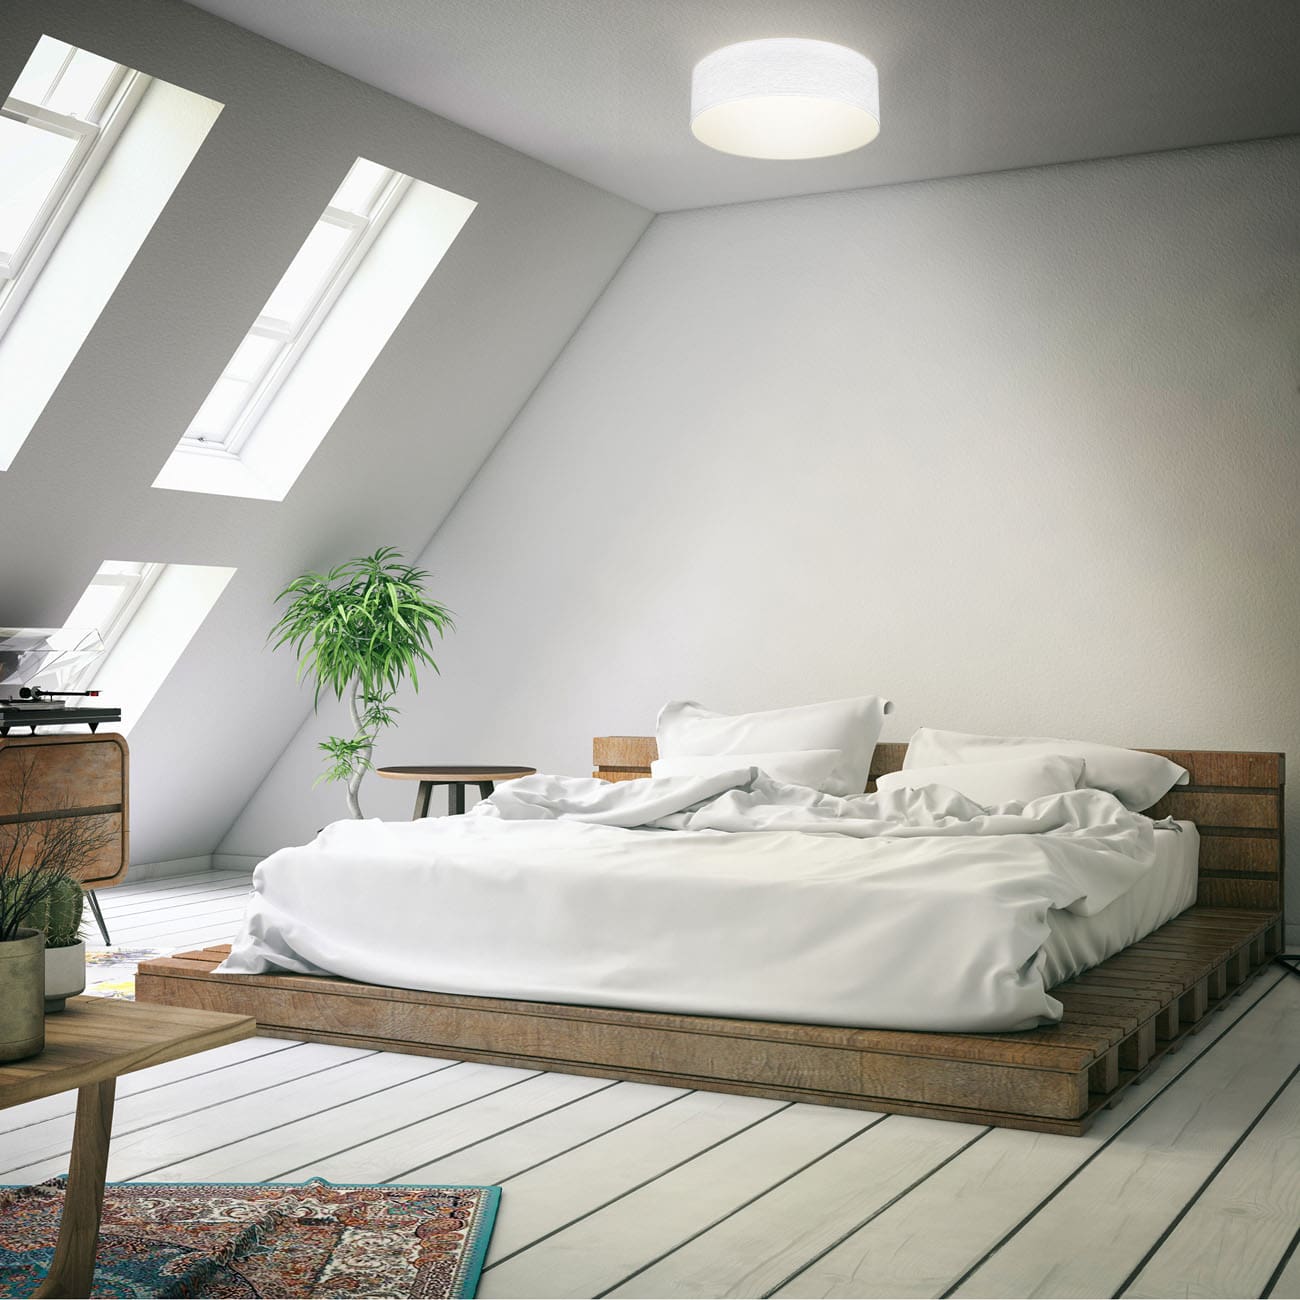 Stoff-Deckenleuchte rund 30x10cm - 1-flammig - Deckenlampe Textil Schlafzimmer Wohnzimmer Fassung E27 LED/Halogen max 40W | weiß - 2